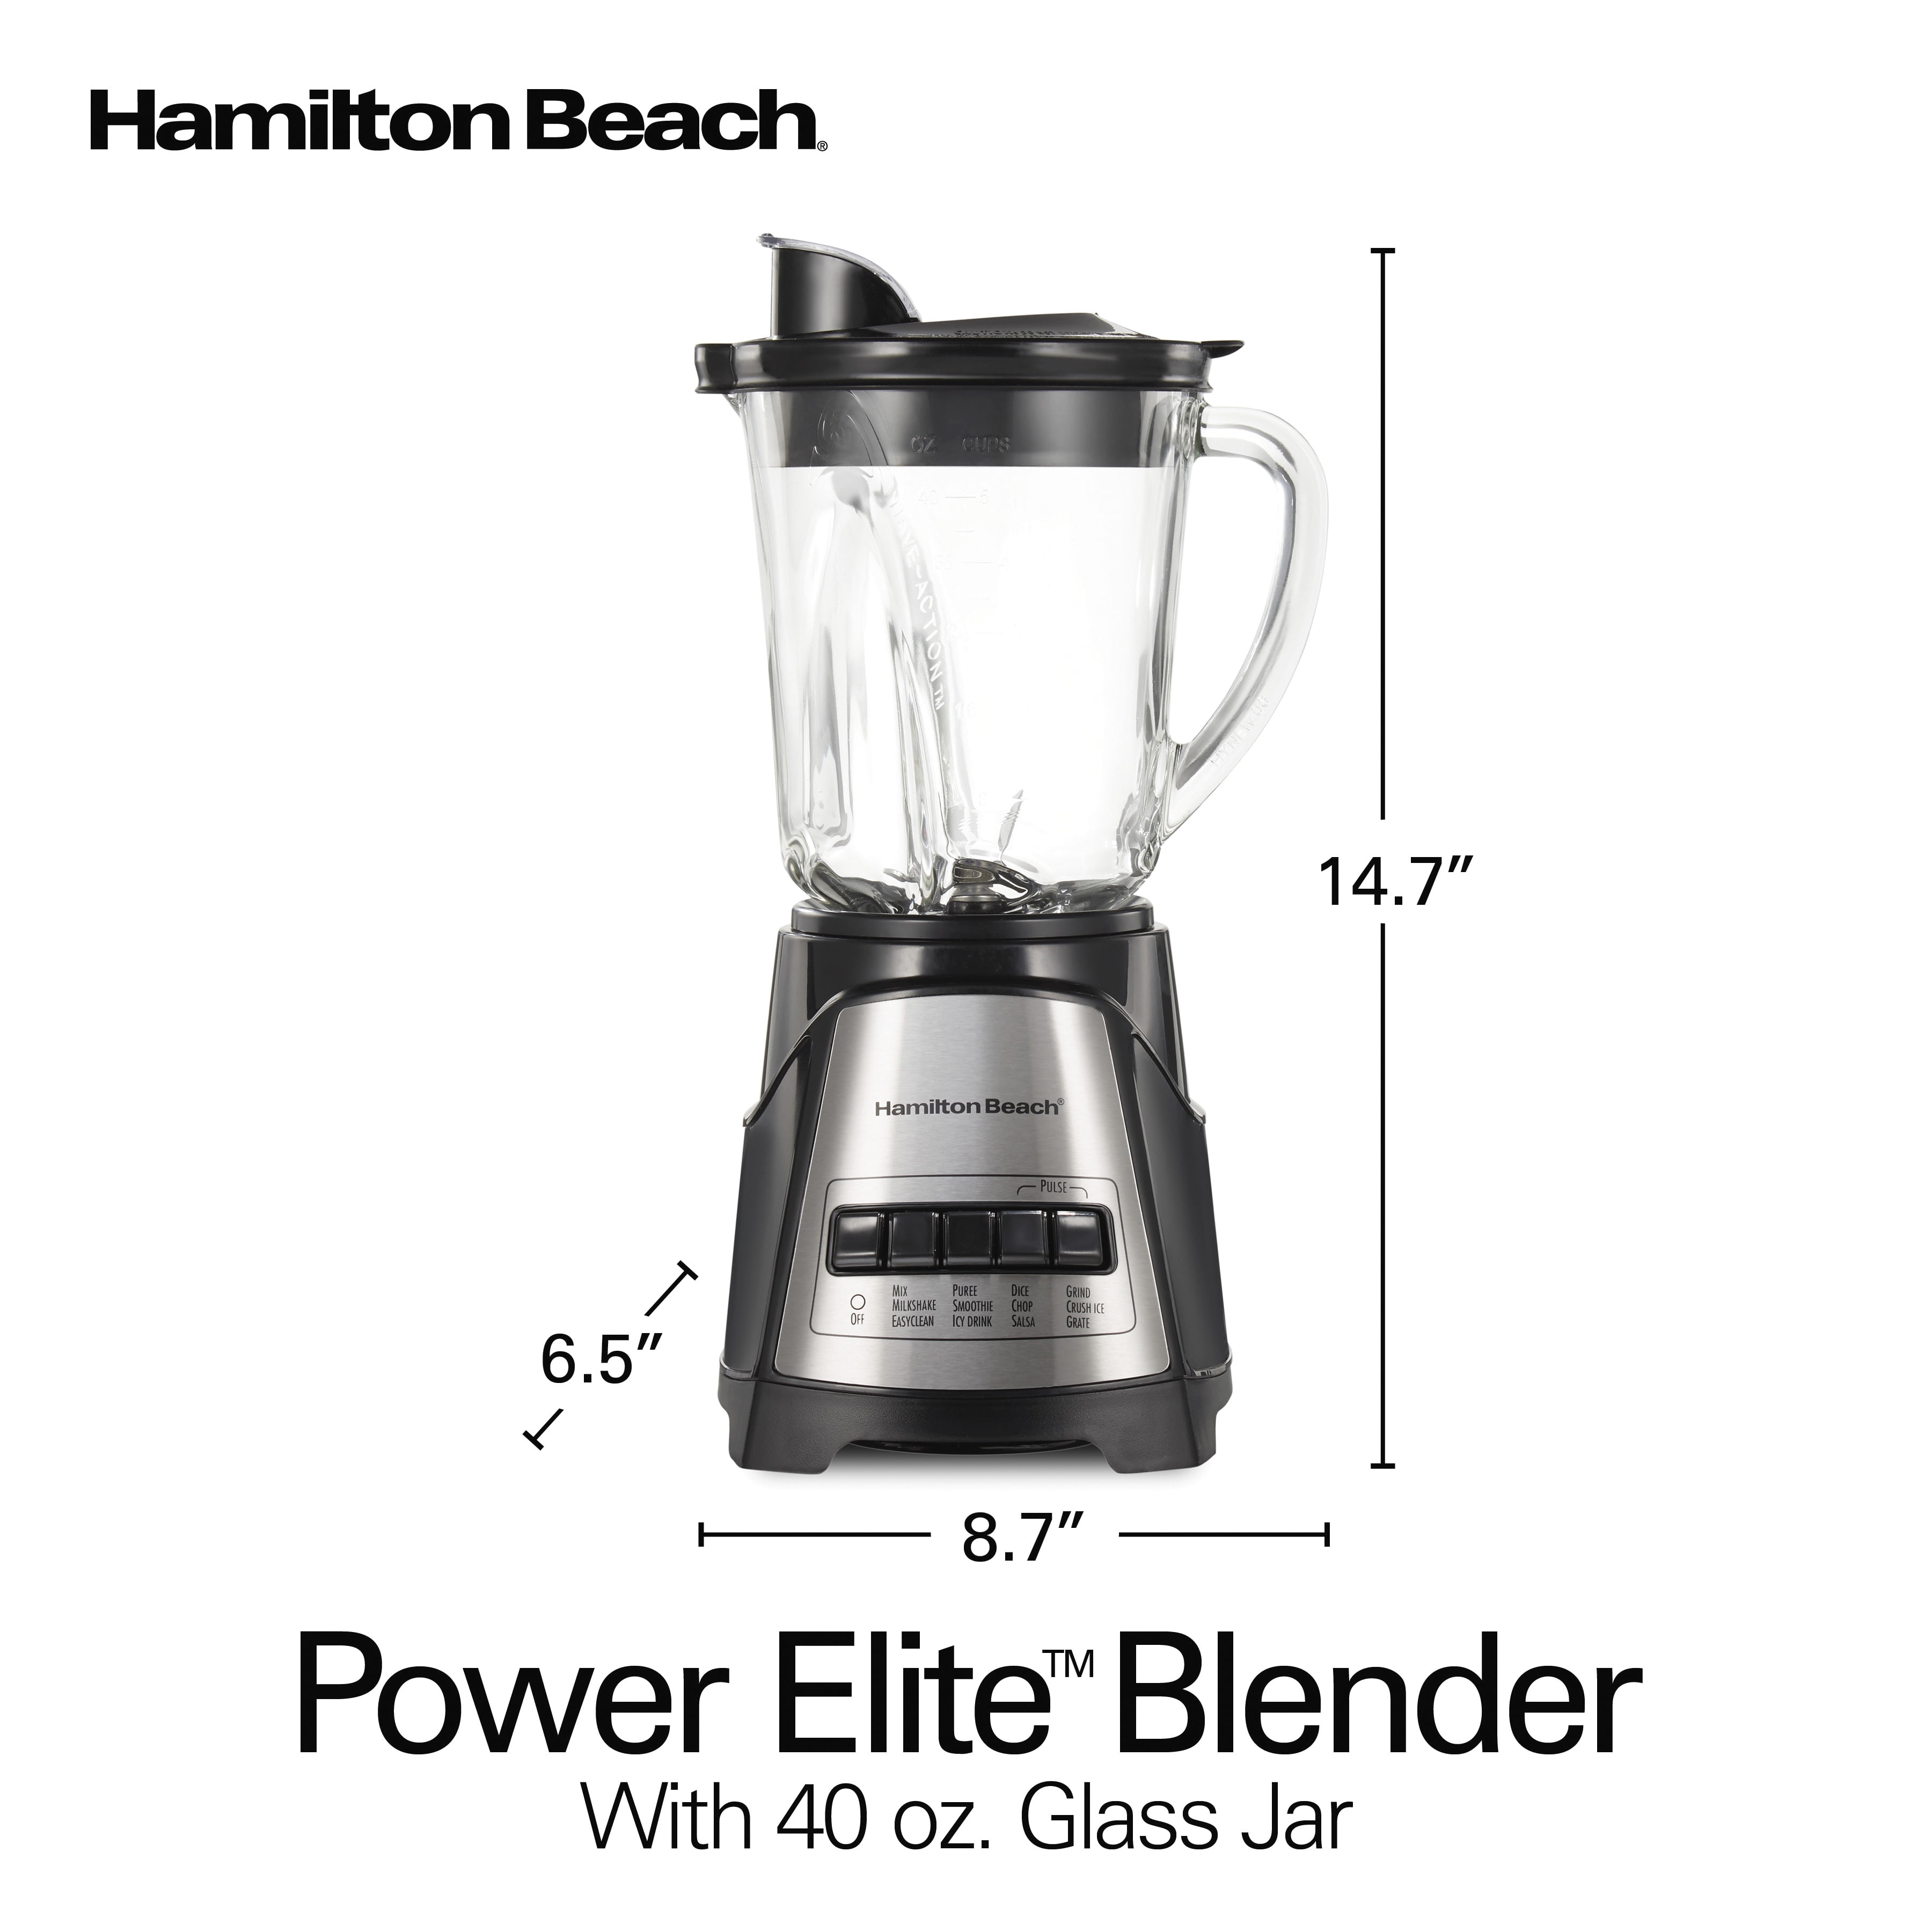 Hamilton Beach Power Elite Multi-Function Blender - 9596931